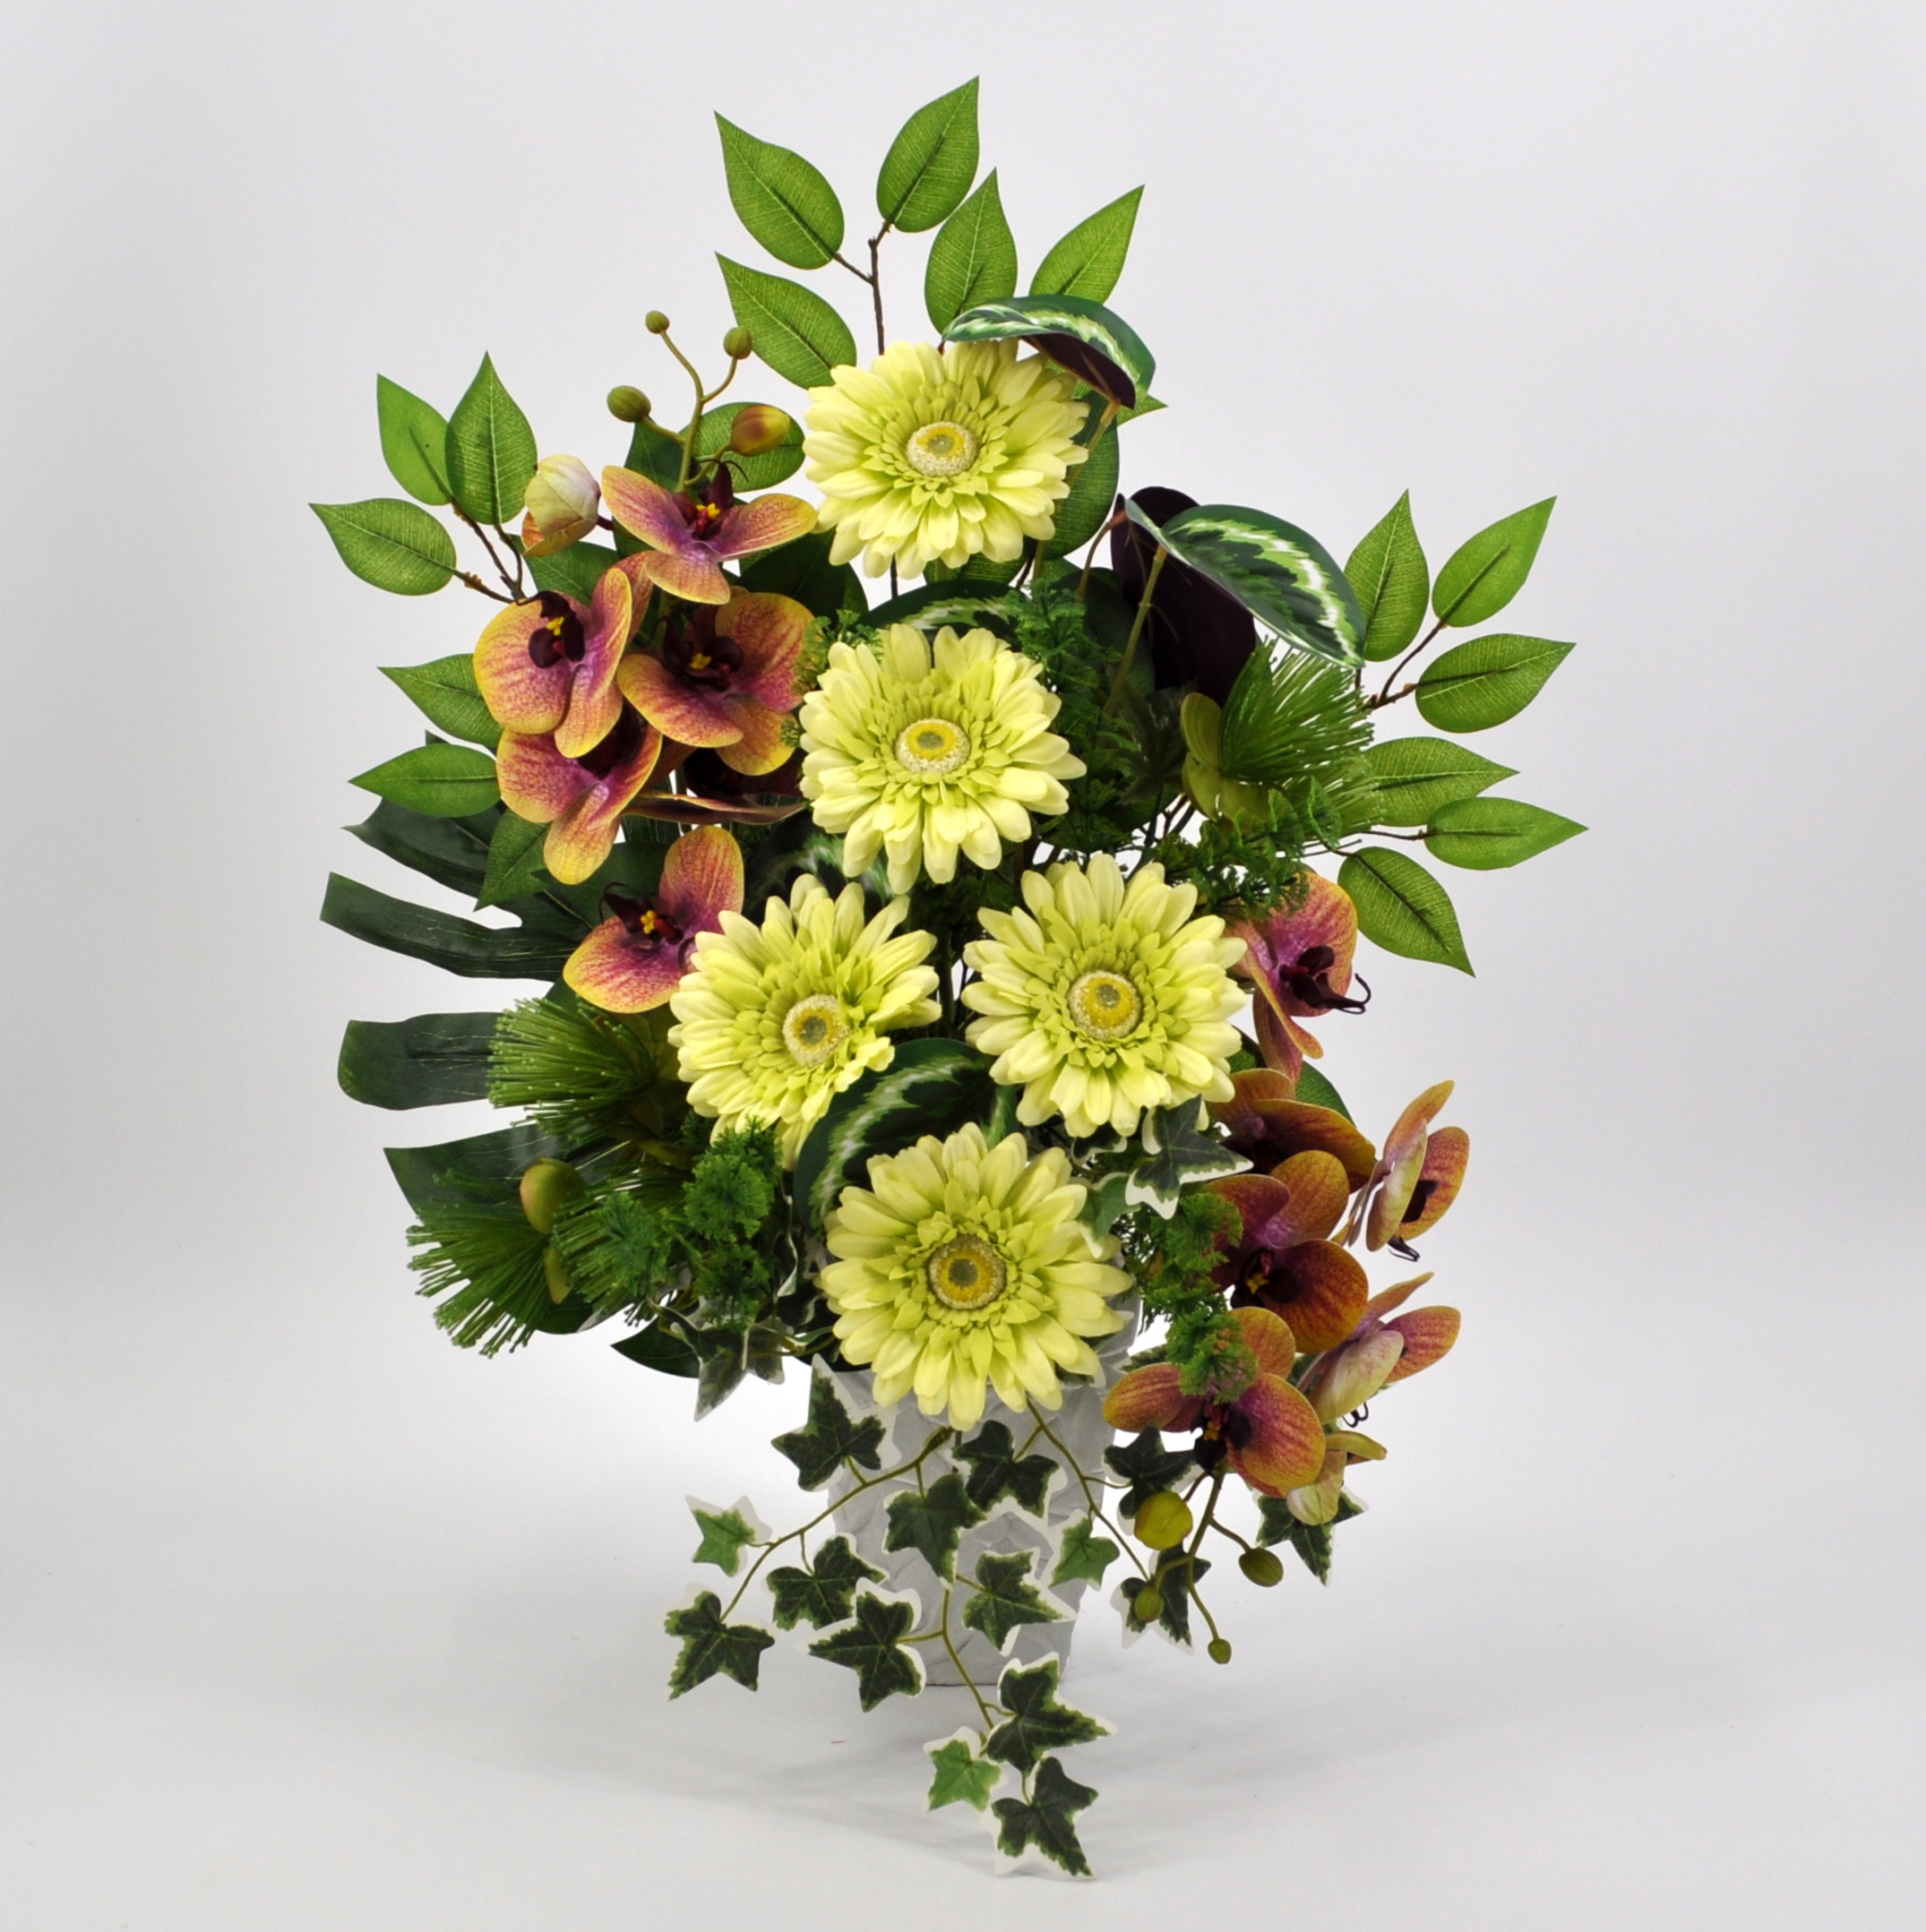 Vasi con fiori finti - Piante Finte - Fiori finti in vaso